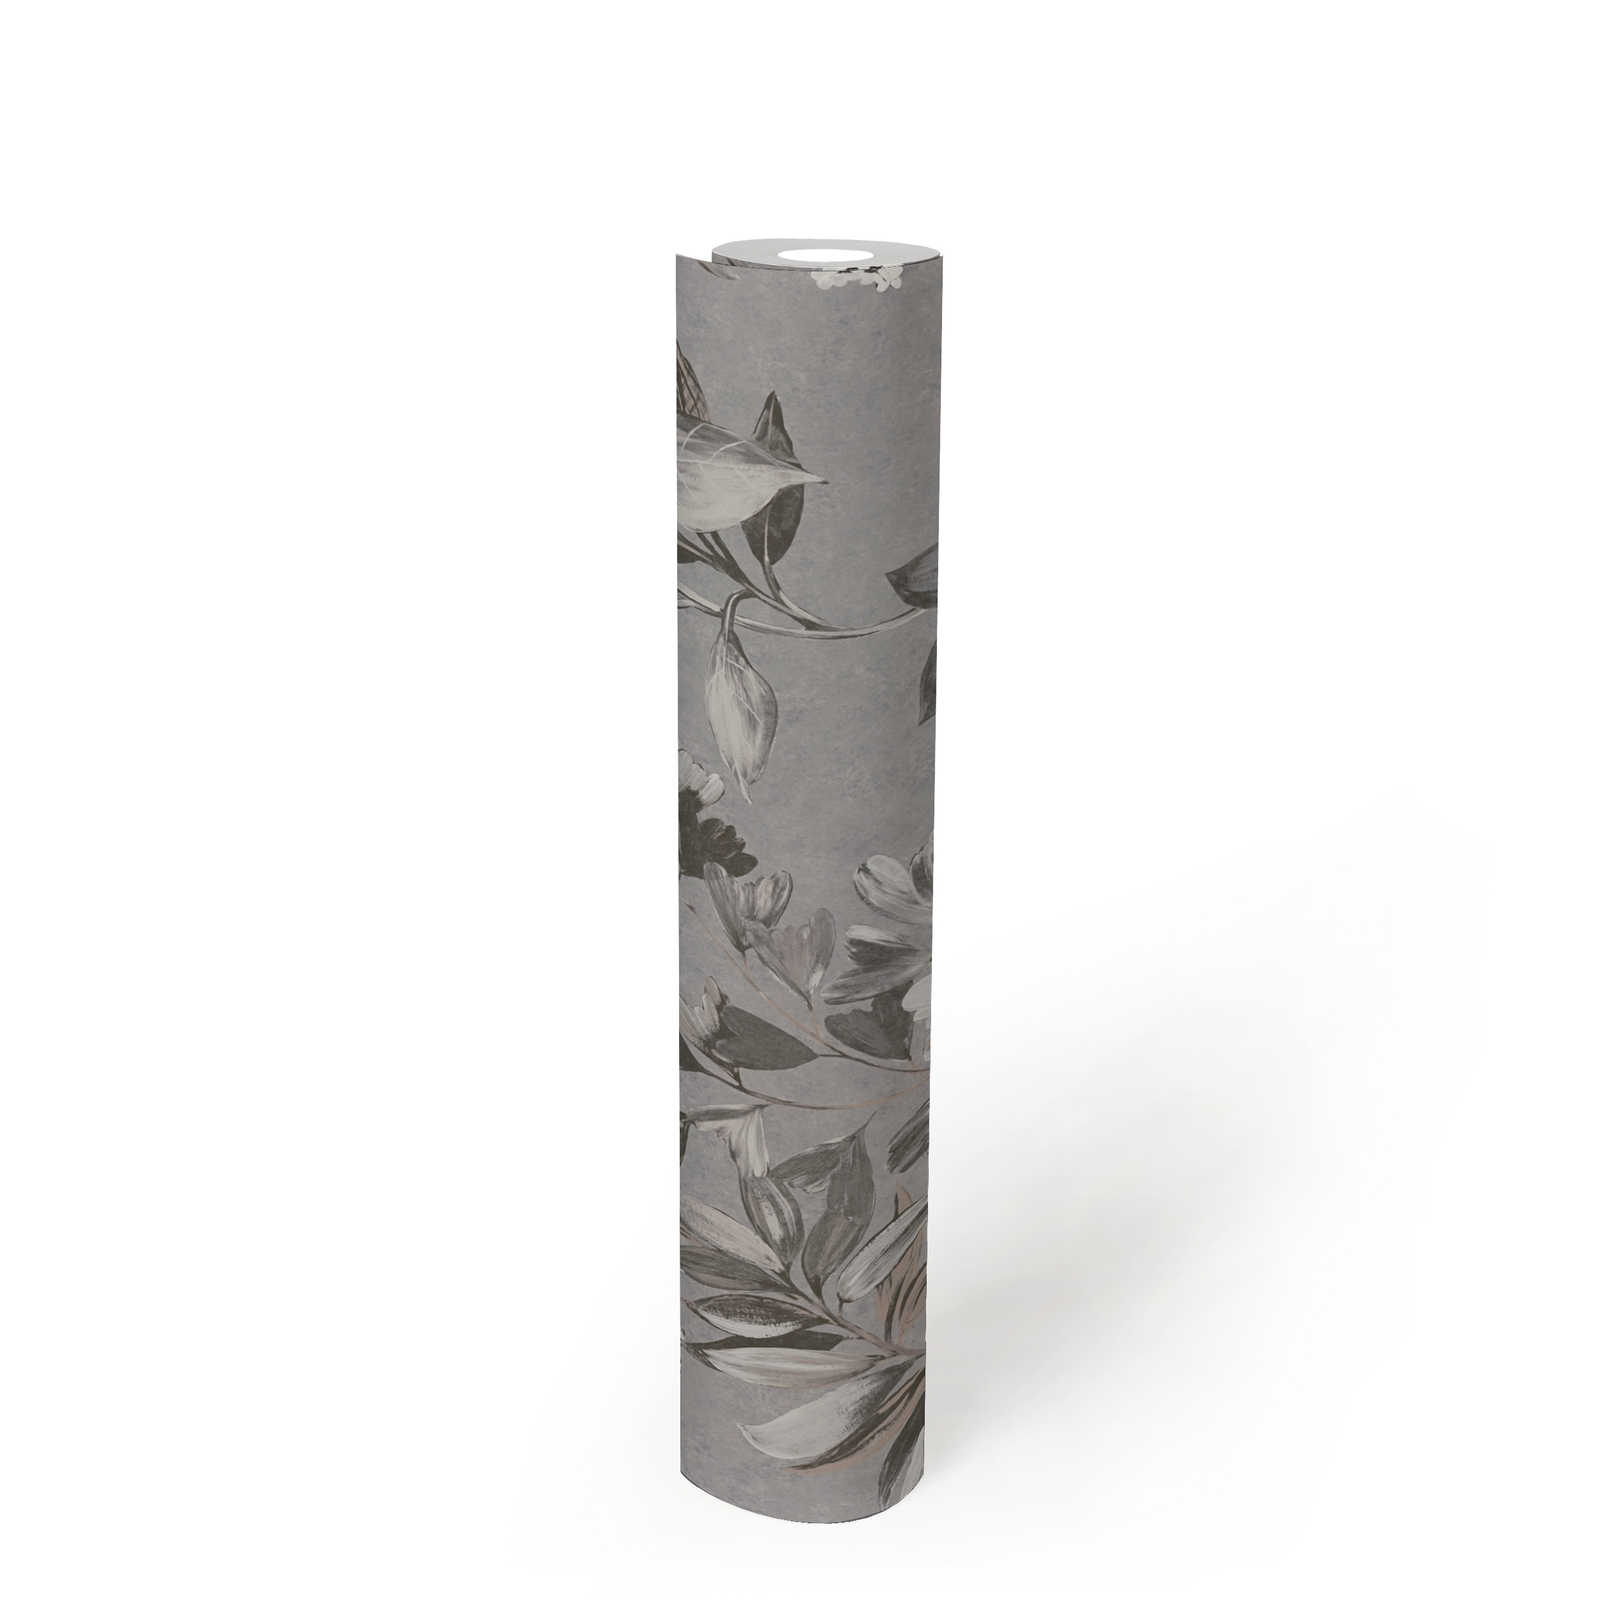             Papel pintado no tejido con motivos florales - gris, blanco, negro
        